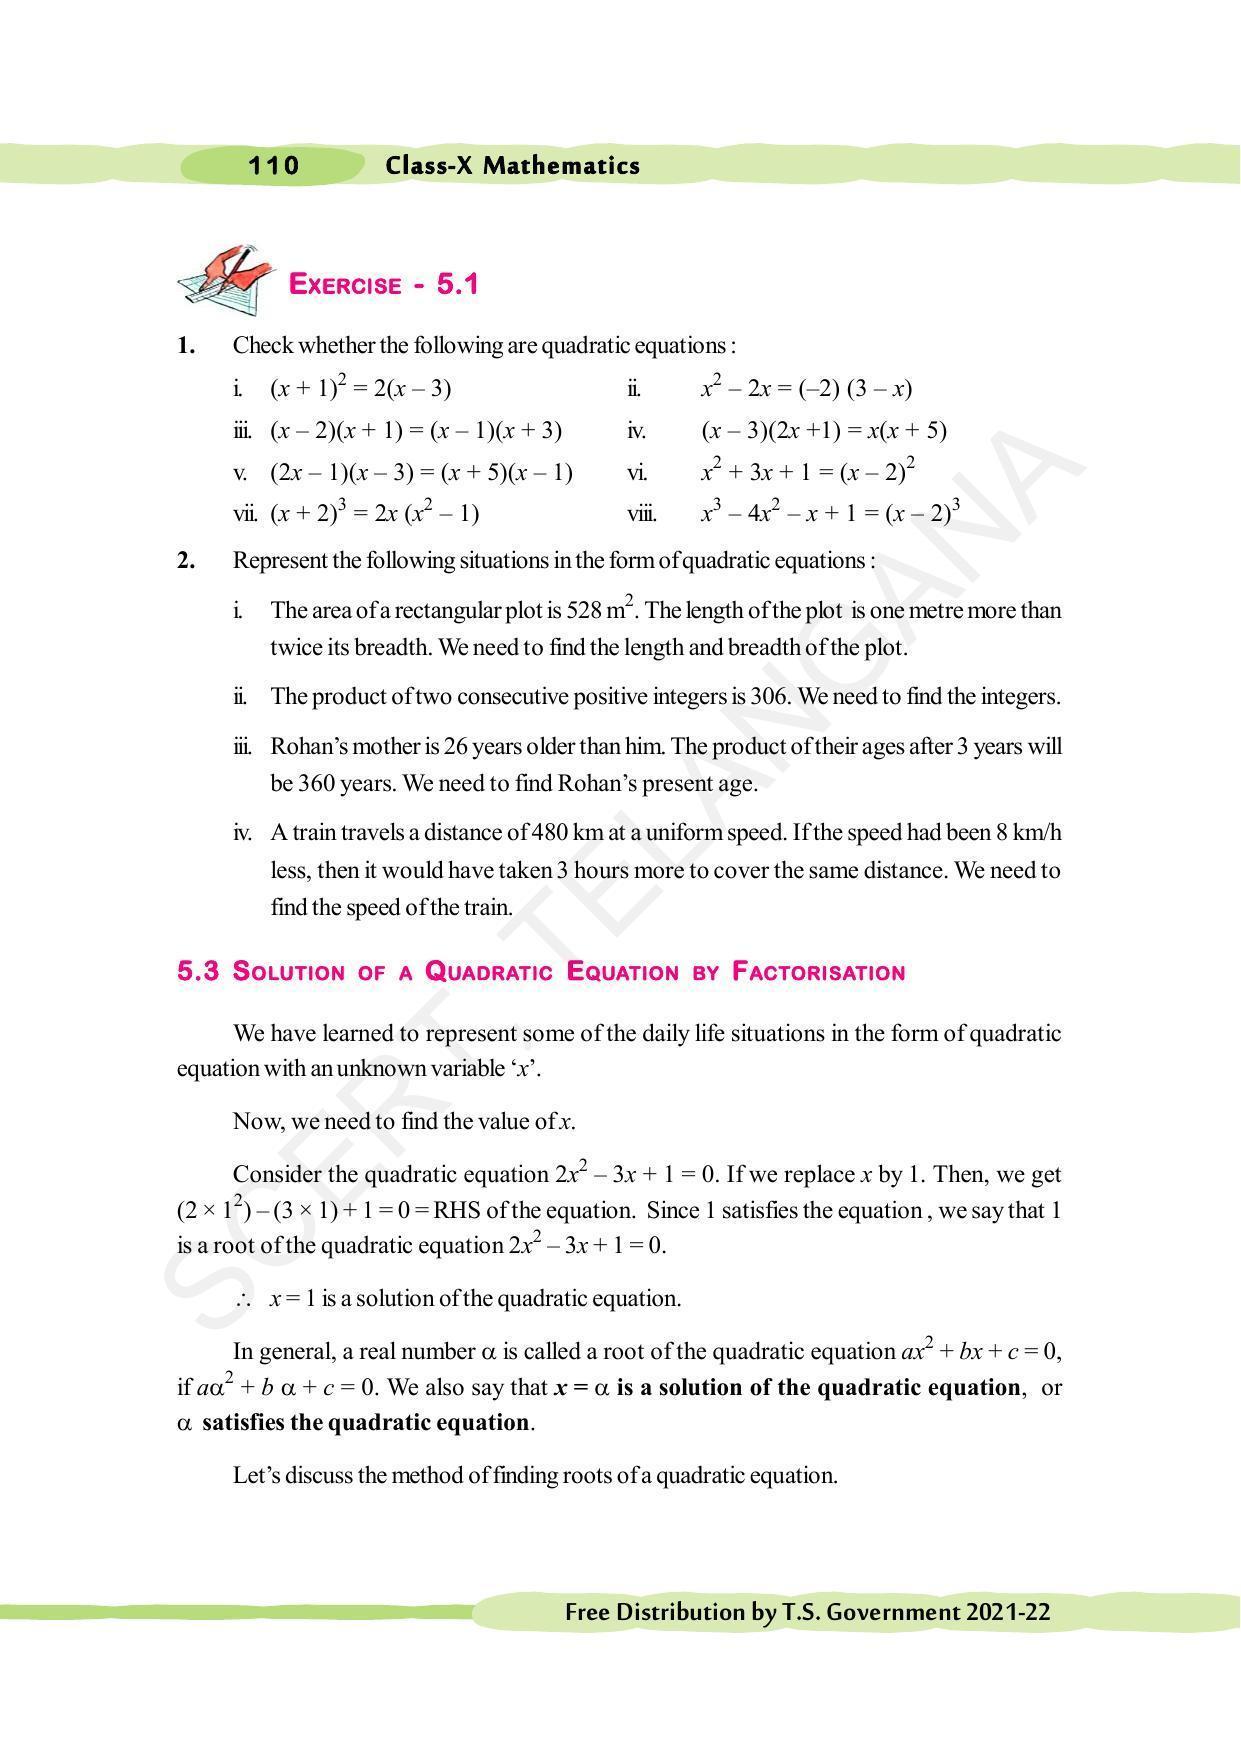 TS SCERT Class 10 Maths (English Medium) Text Book - Page 120